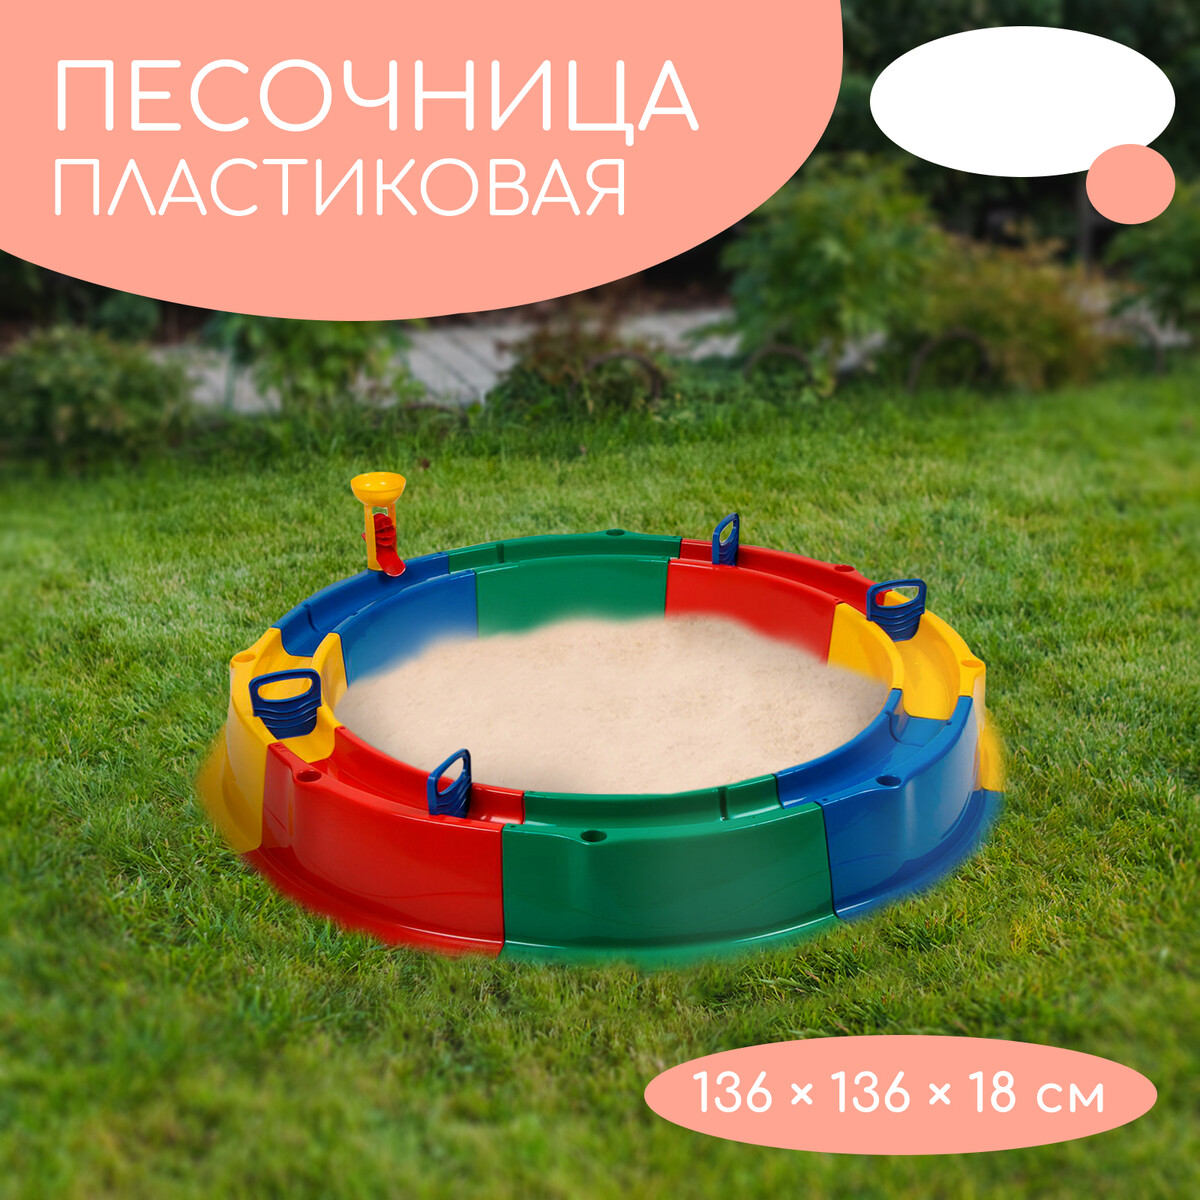 Песочница детская пластиковая, 136 × 136 × 18 см, с набором для игр, лишний в его игре